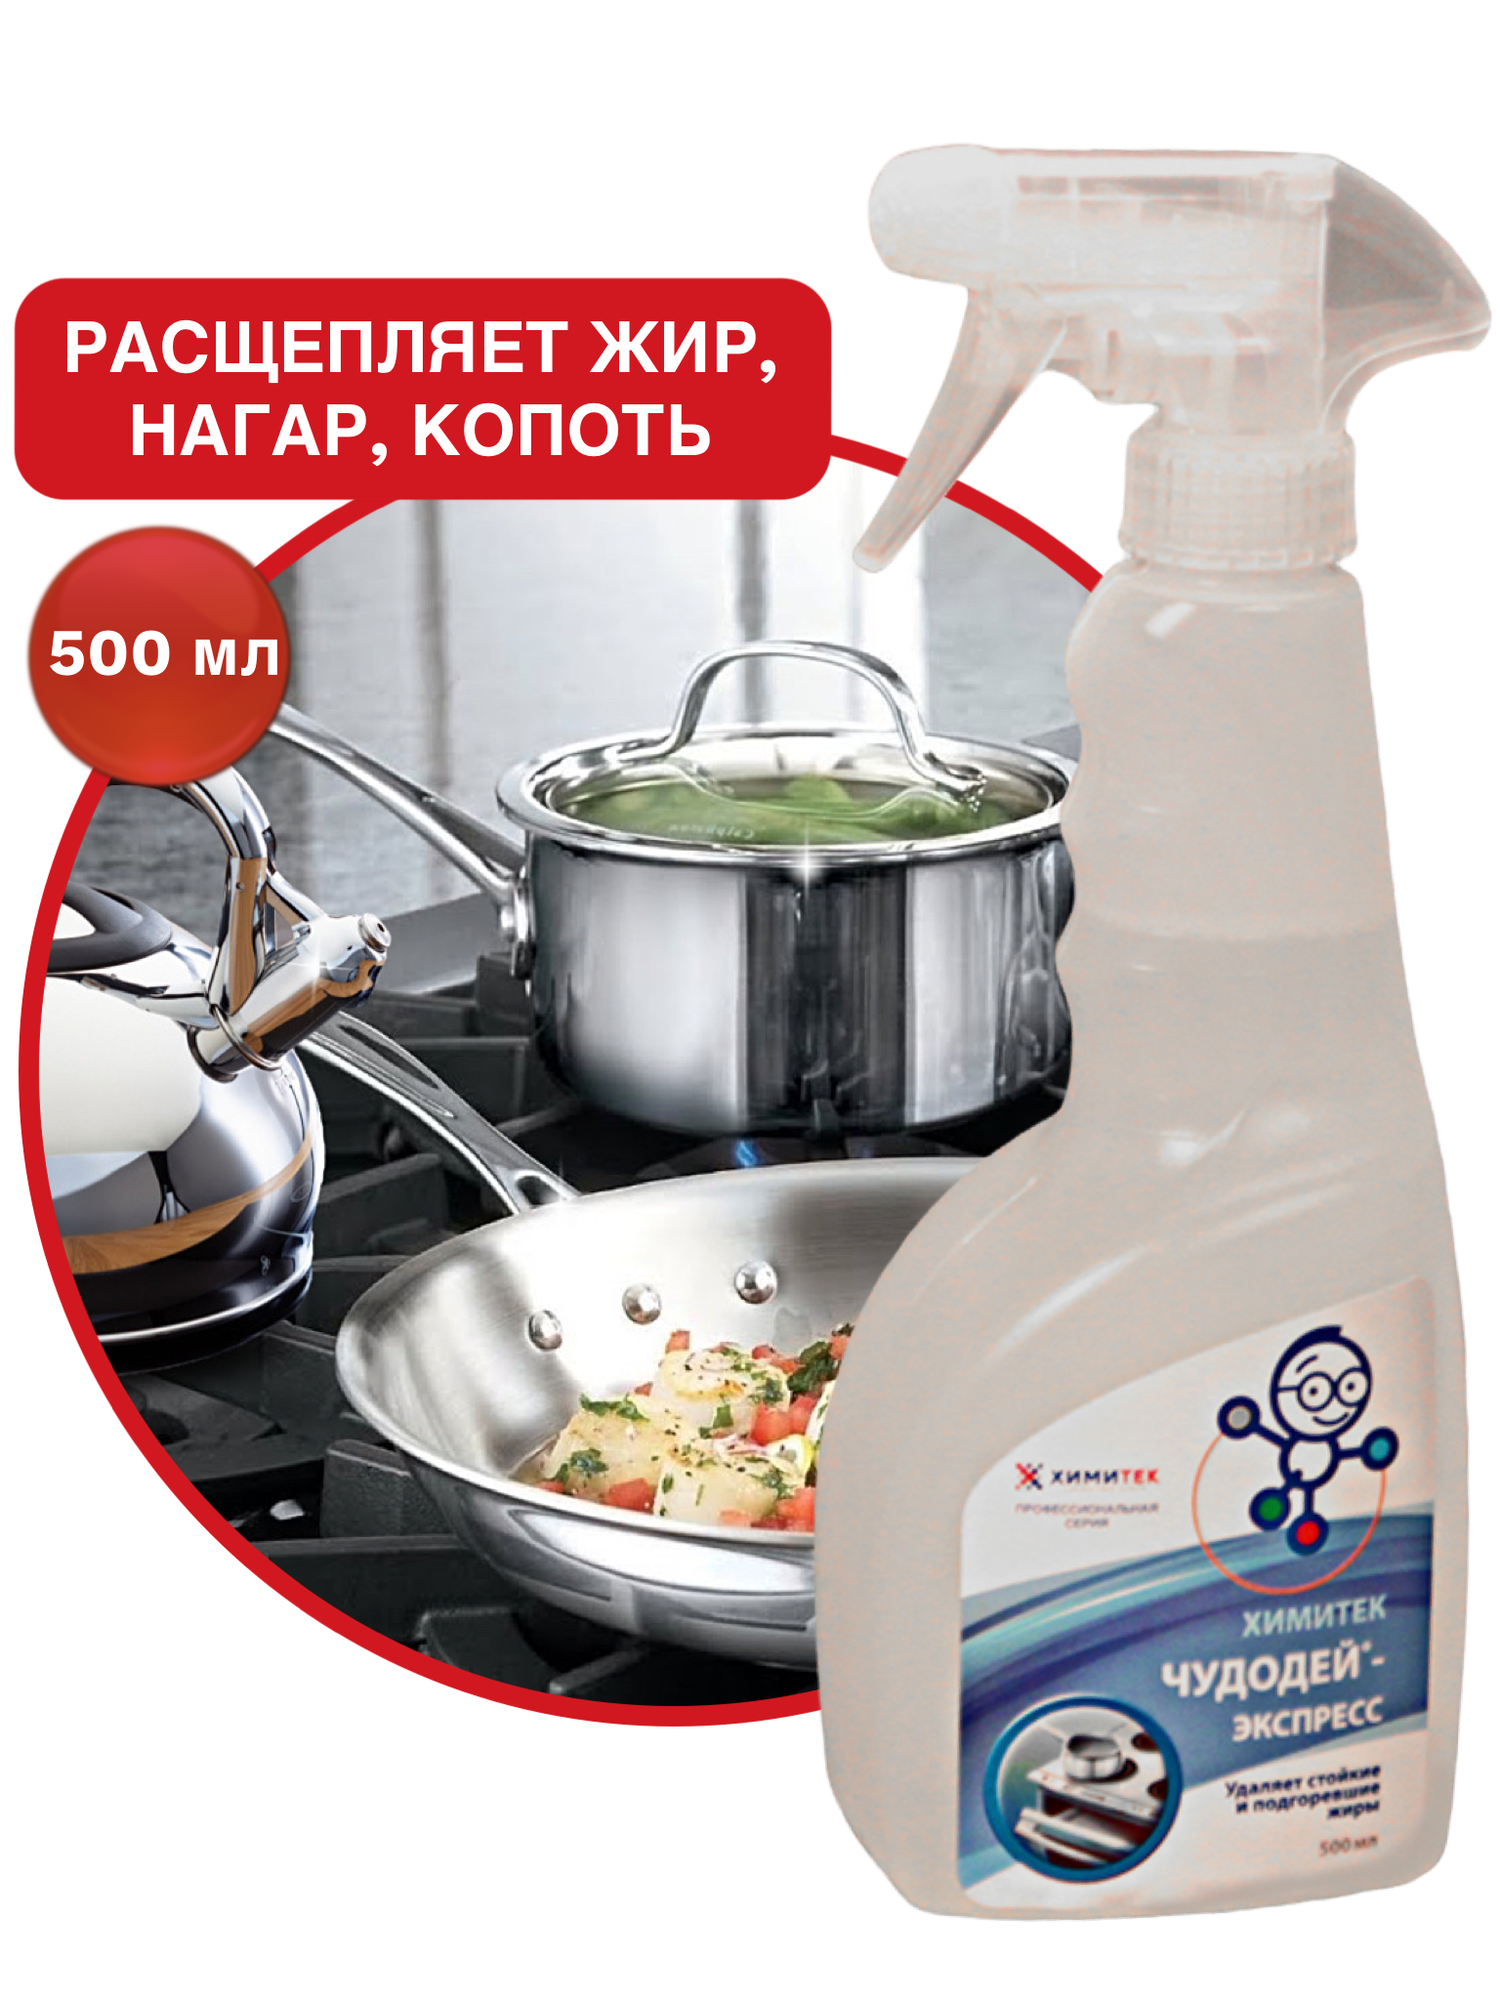 Химитек Чудодей-Экспресс 0,5л жироудалитель чистящее средство для кухни, для индукционной, стеклокерамической плит, духовых шкафов